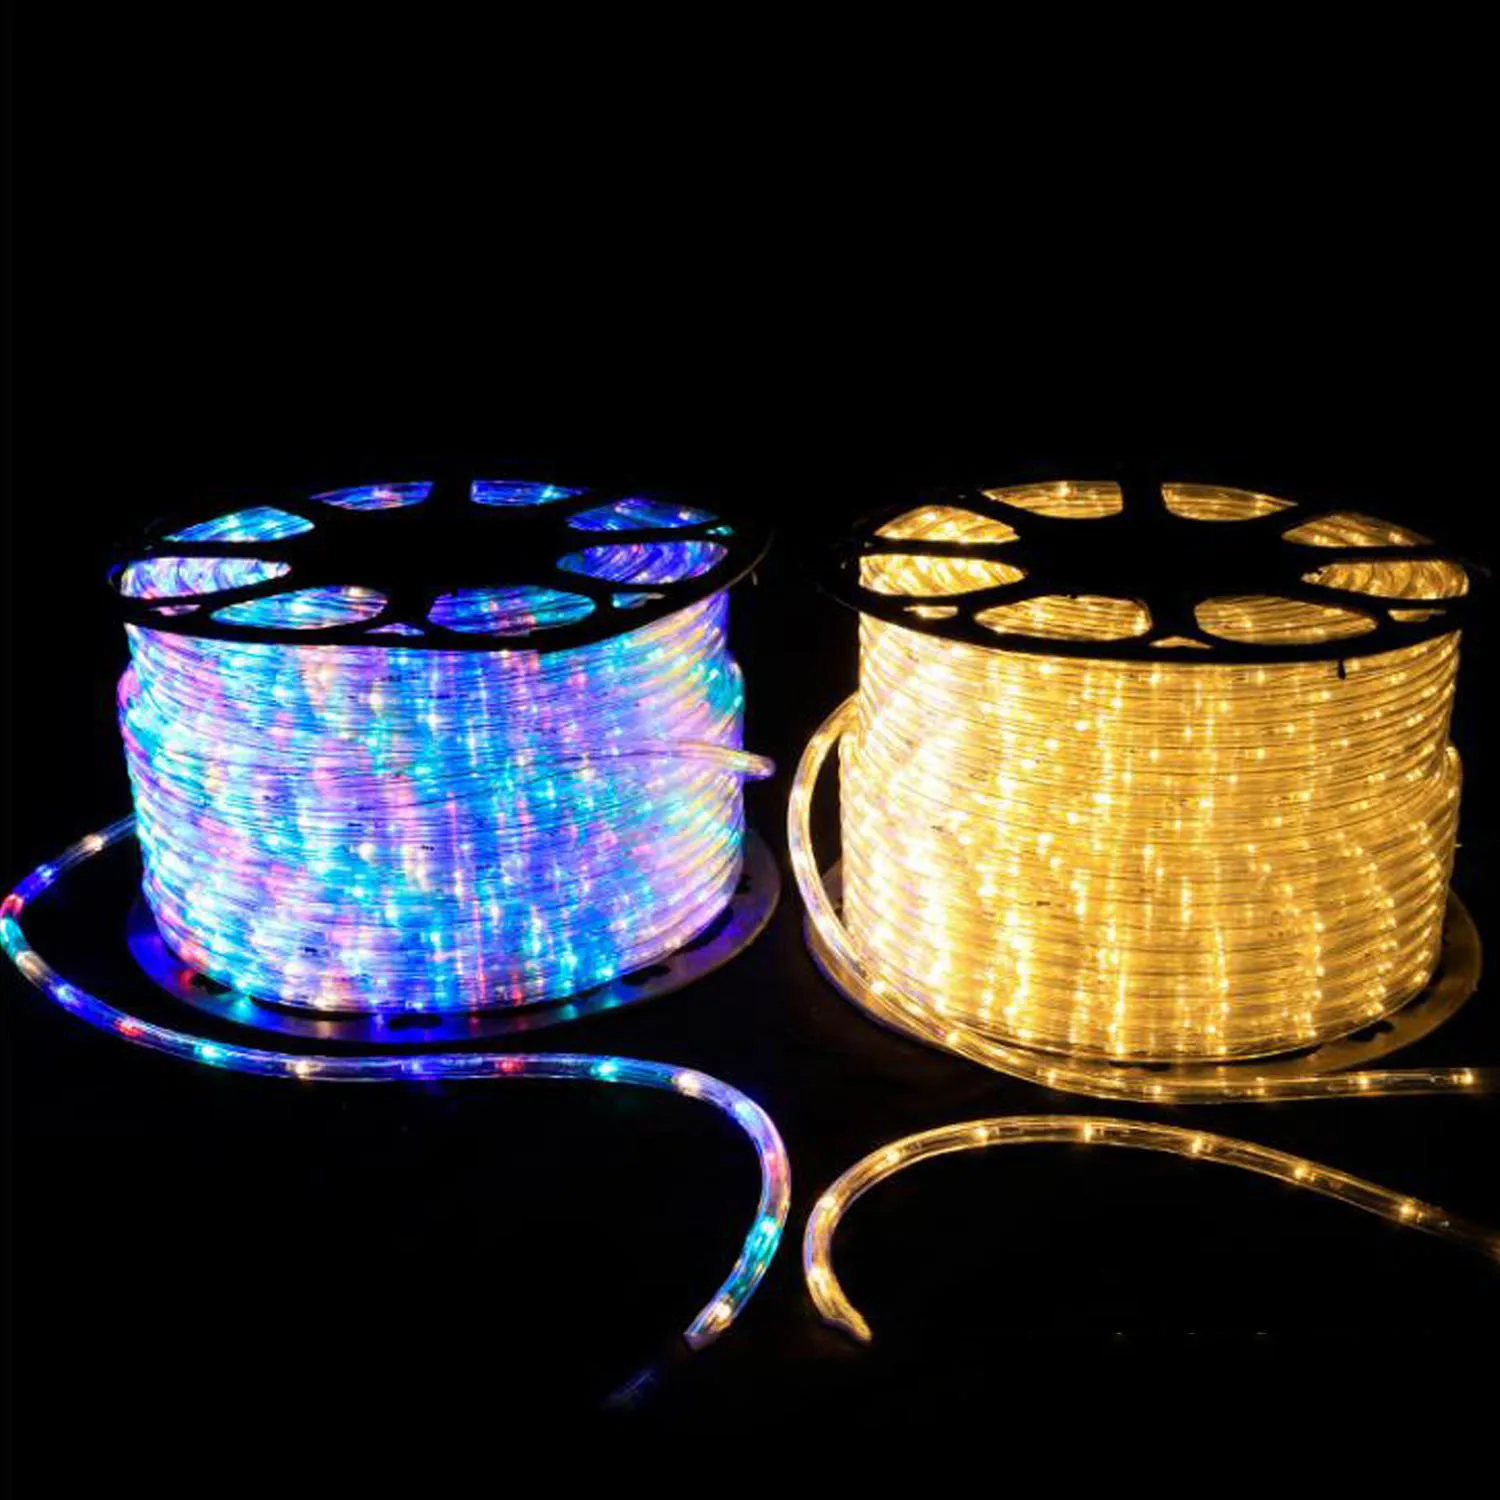 Luo-401XX 20 Luces De Tiras LED Carga USB Diseño De Forma Luces De Hadas Guirnalda Lámpara De Decoración para Dormitorio Patio Jardín Vacaciones Decoración De Fiesta De Navidad 